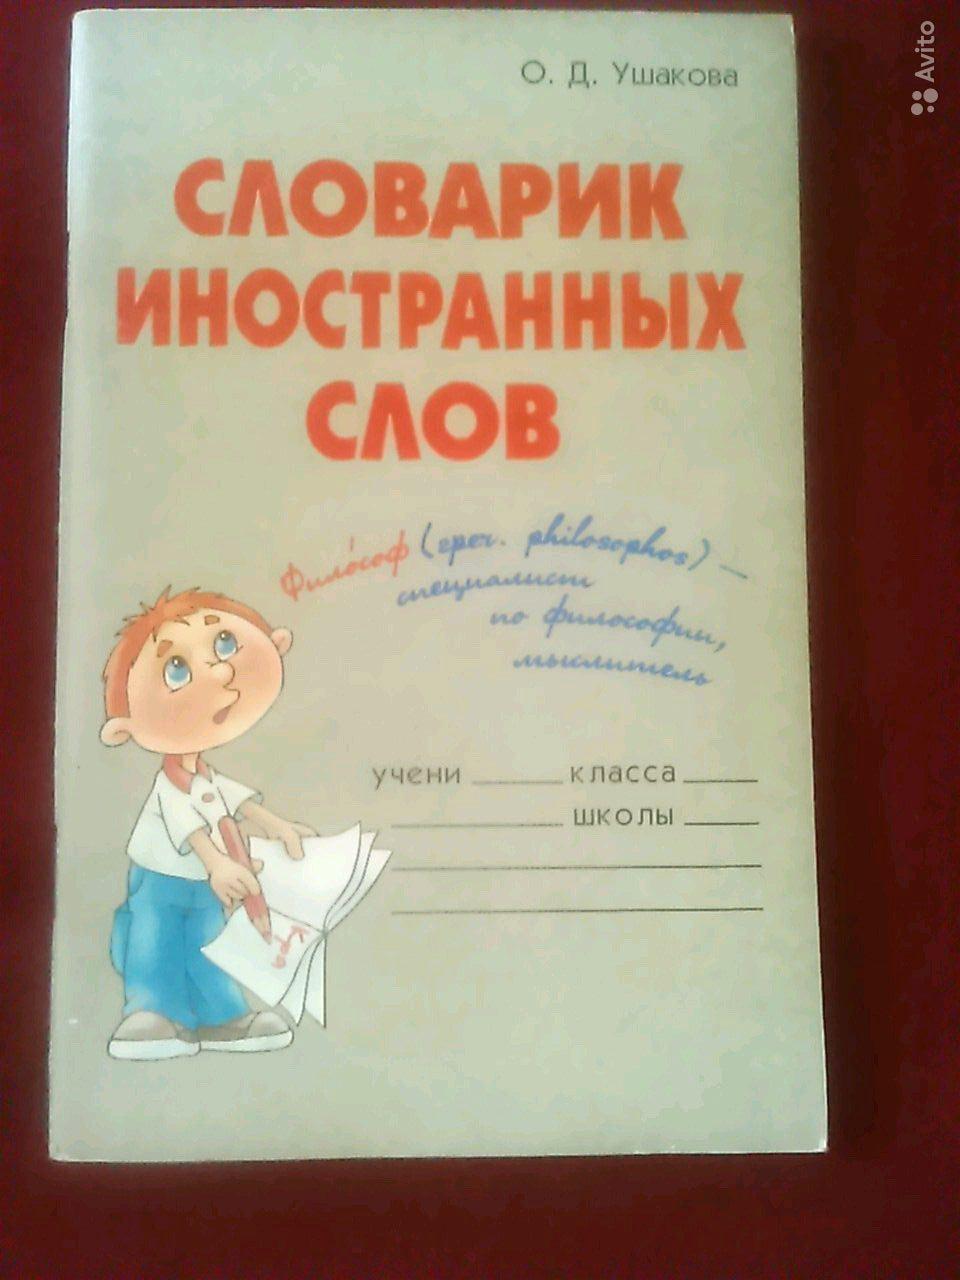 Словарик иностранных слов О. Д. Ушакова